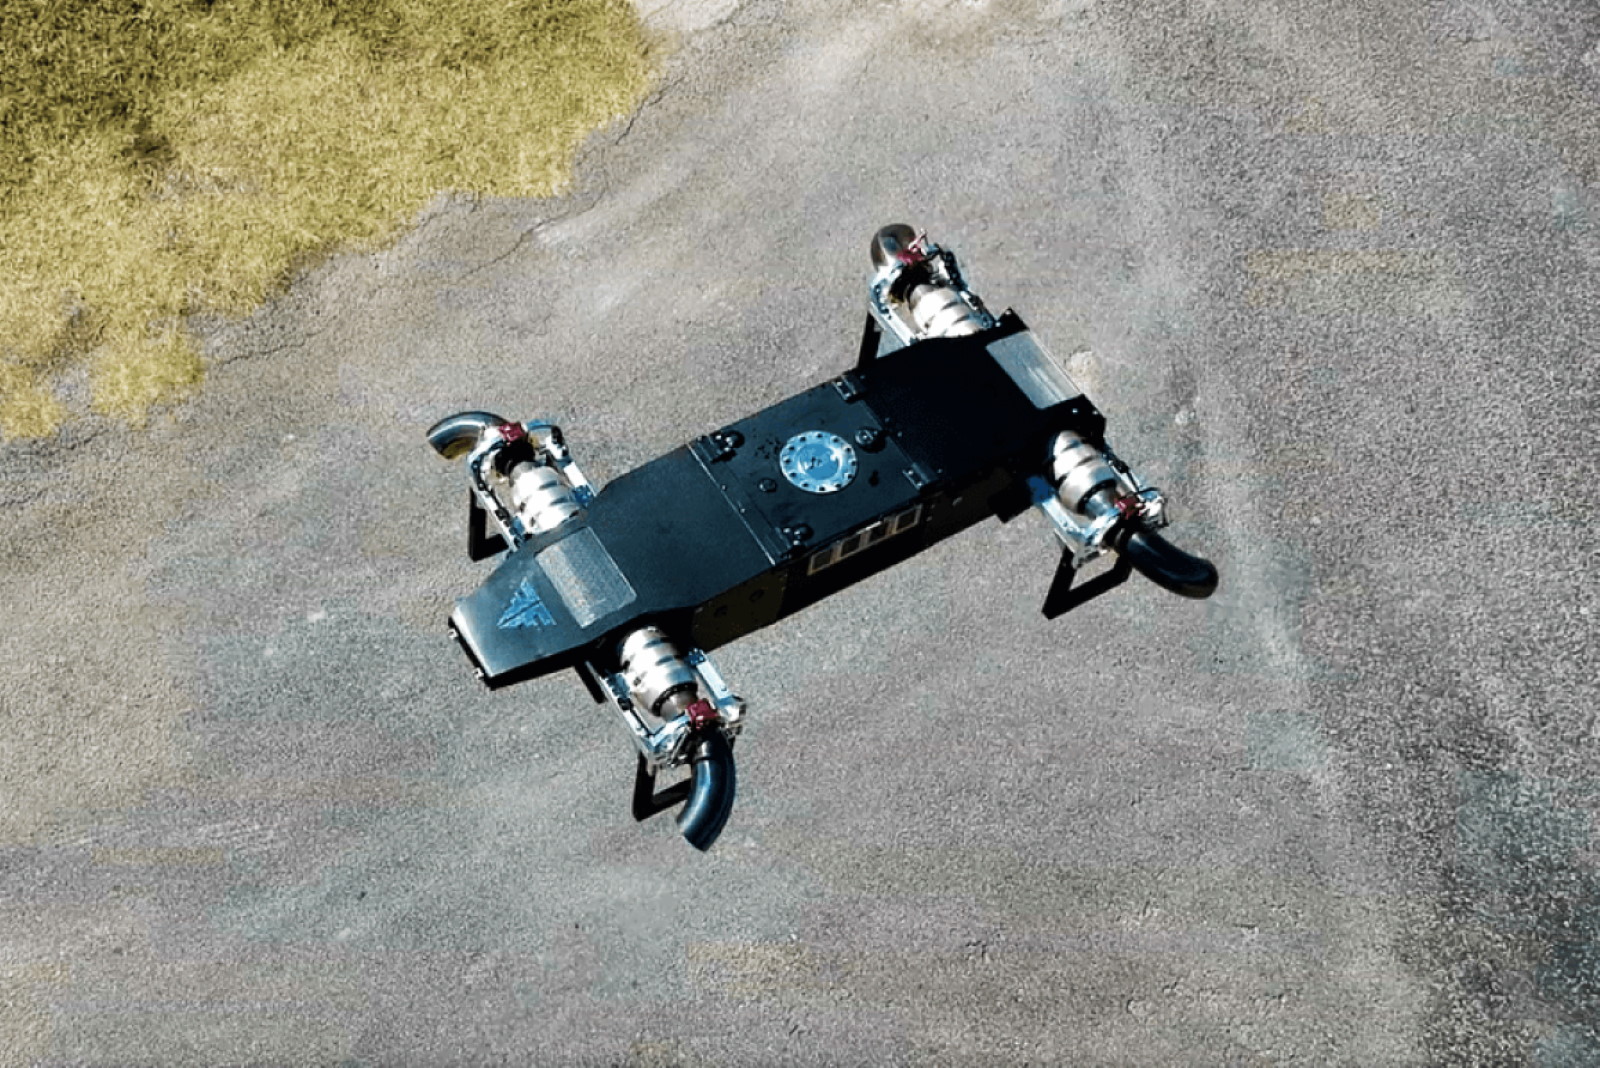 Avec le drone à réaction JetQuad AB5 les avantages sont certains pour les militaires ou les secours. Le drone peut arriver très vite sur site. Le carburant délivre 40 fois plus d'énergie qu'une batterie au lithium et le plein ne prend que quelques minutes au lieu des heures nécessaires pour recharger un drone électrique. © FusionFlight